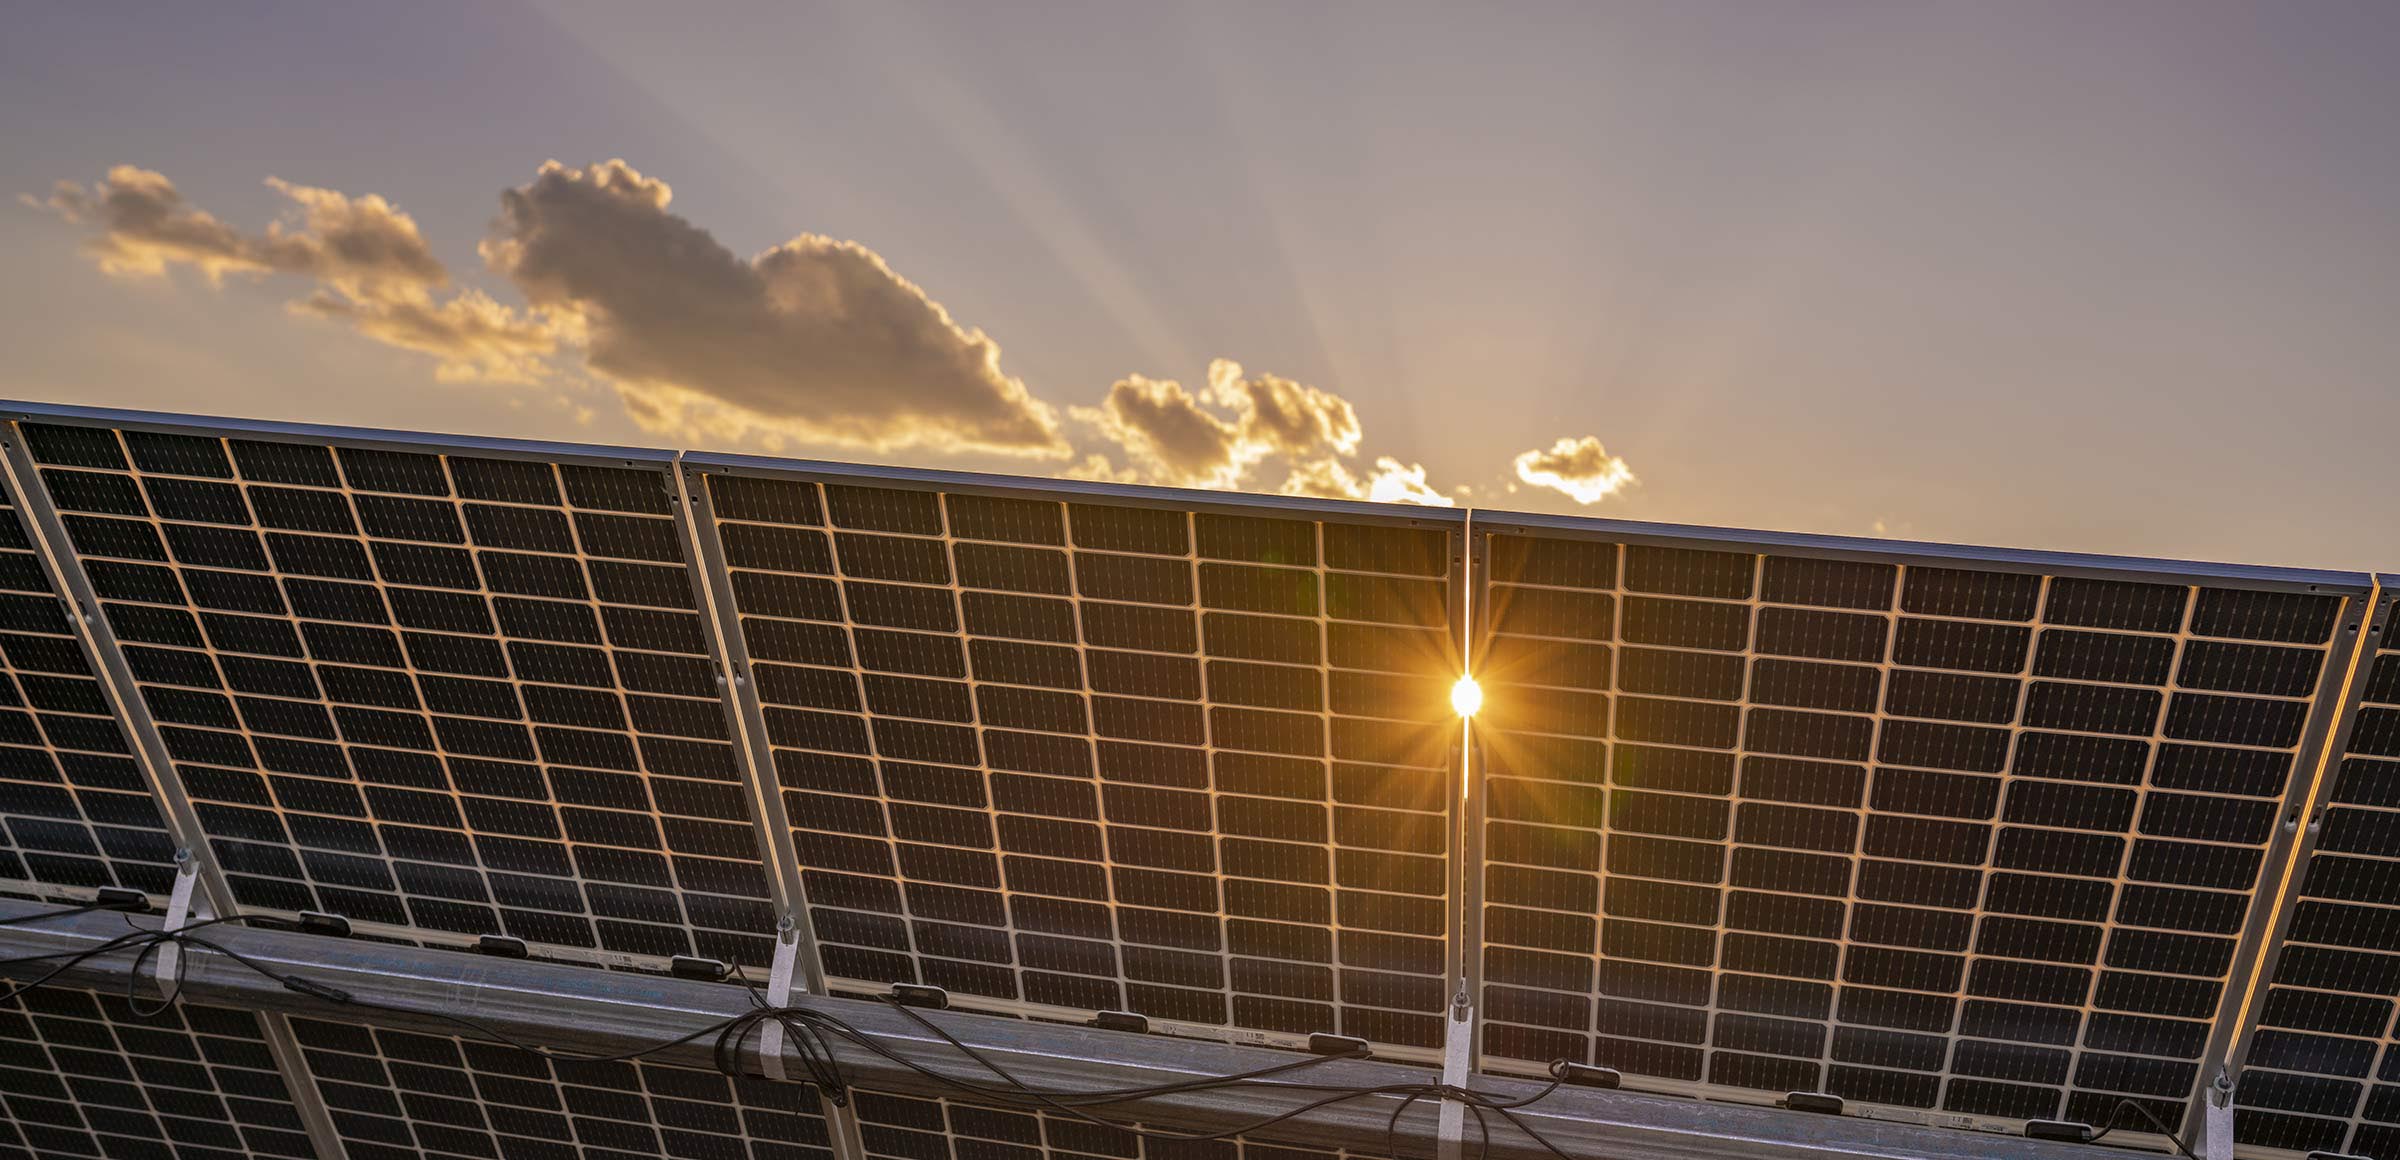 Pannelli solari sostenibili: una nuova frontiera industriale